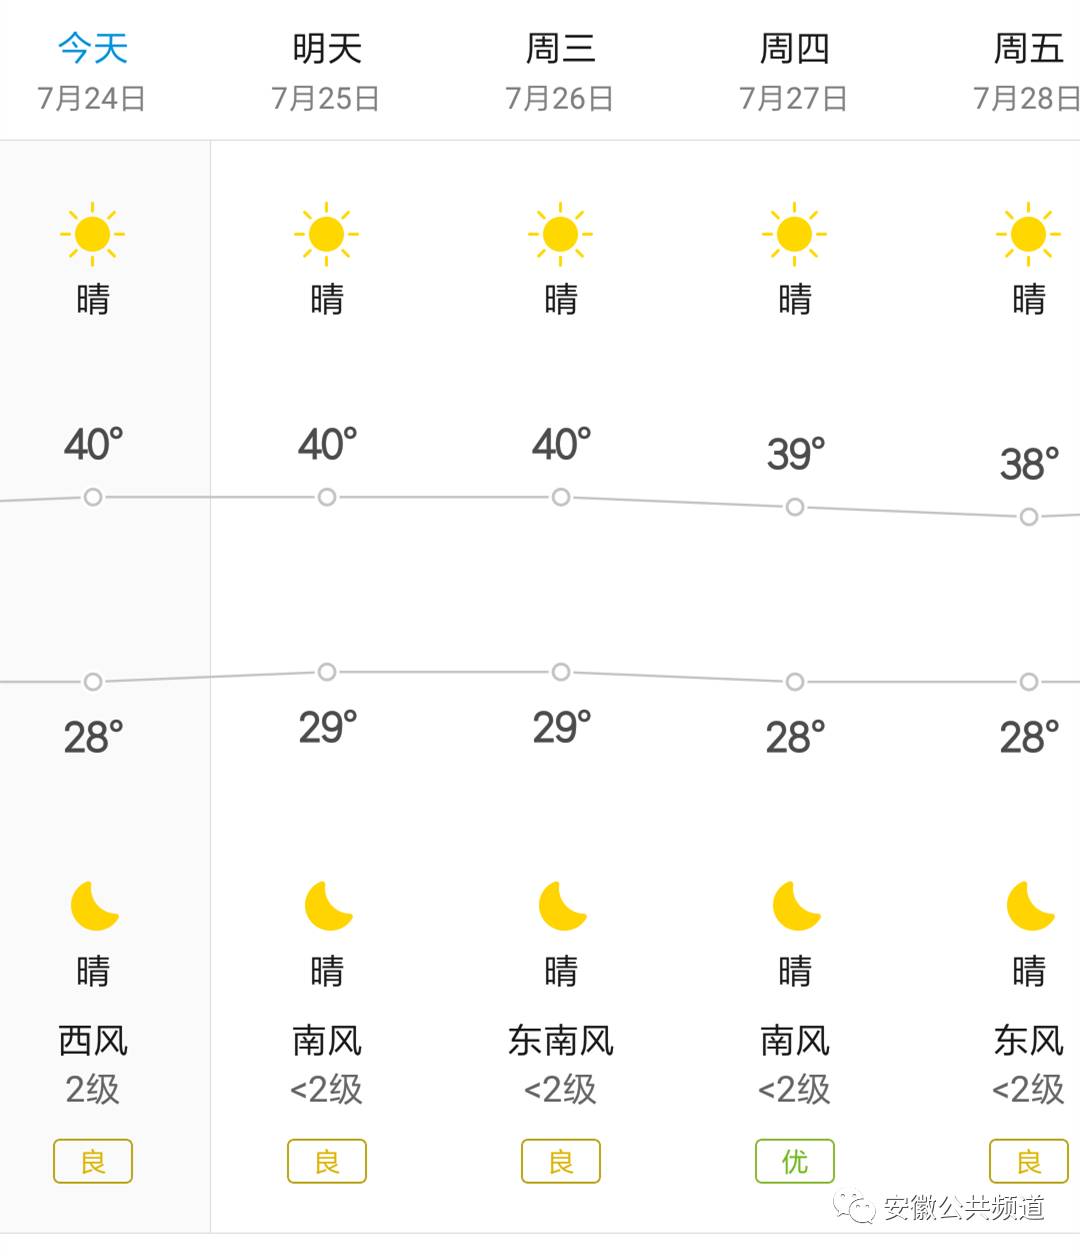 安徽高温持续到什么时候__安徽高温天气还有多少天